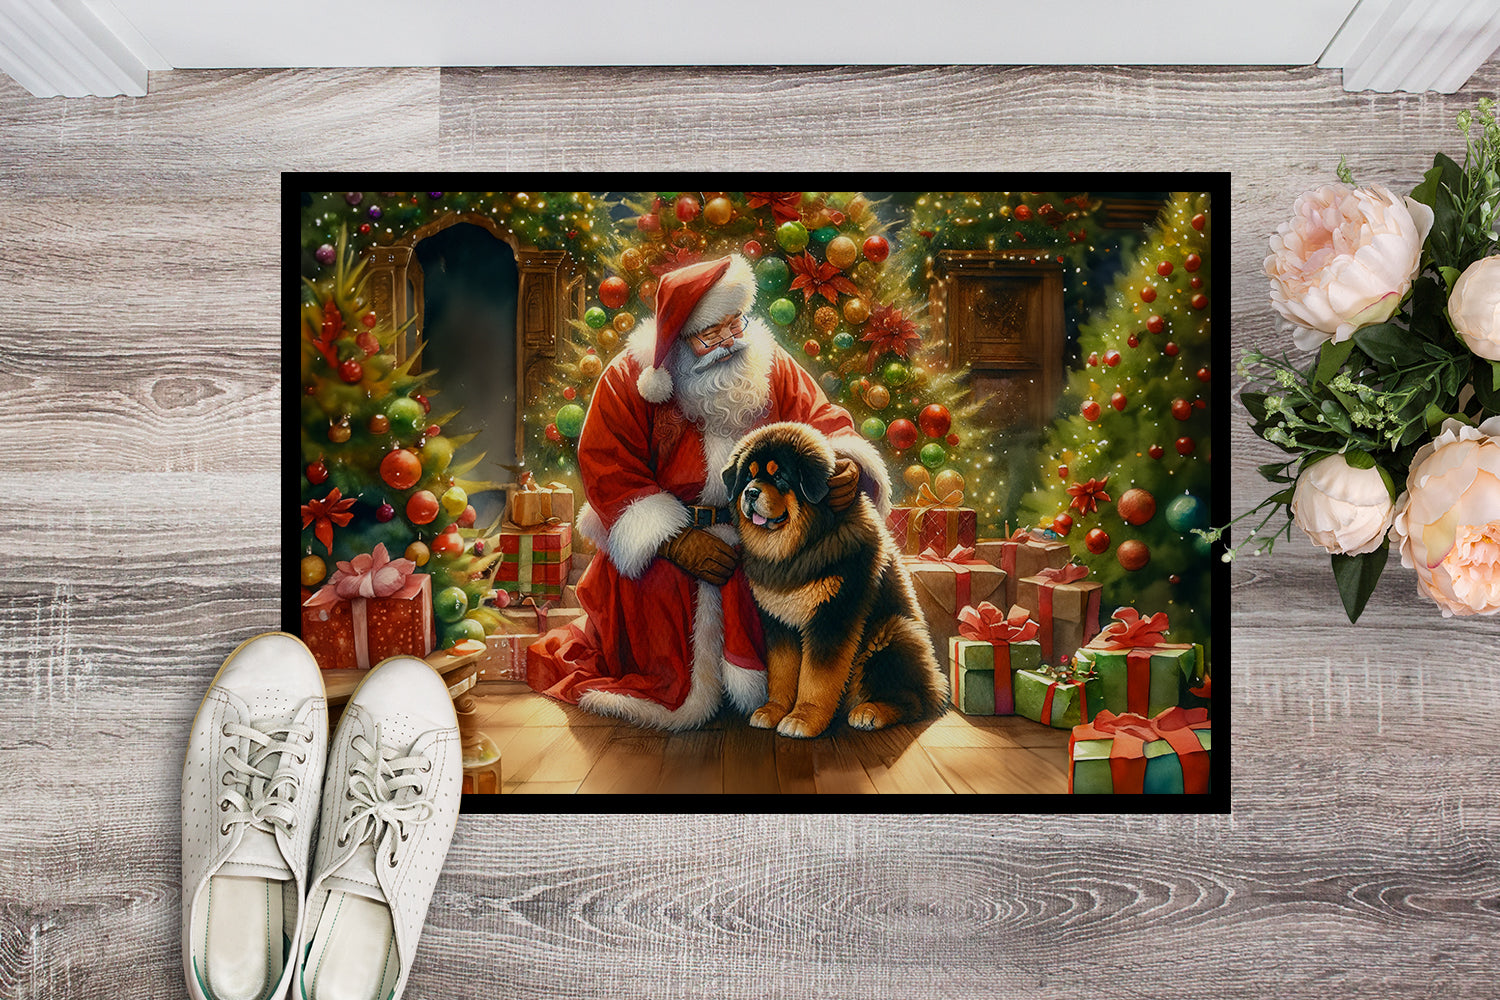 Tibetan Mastiff and Santa Claus Doormat